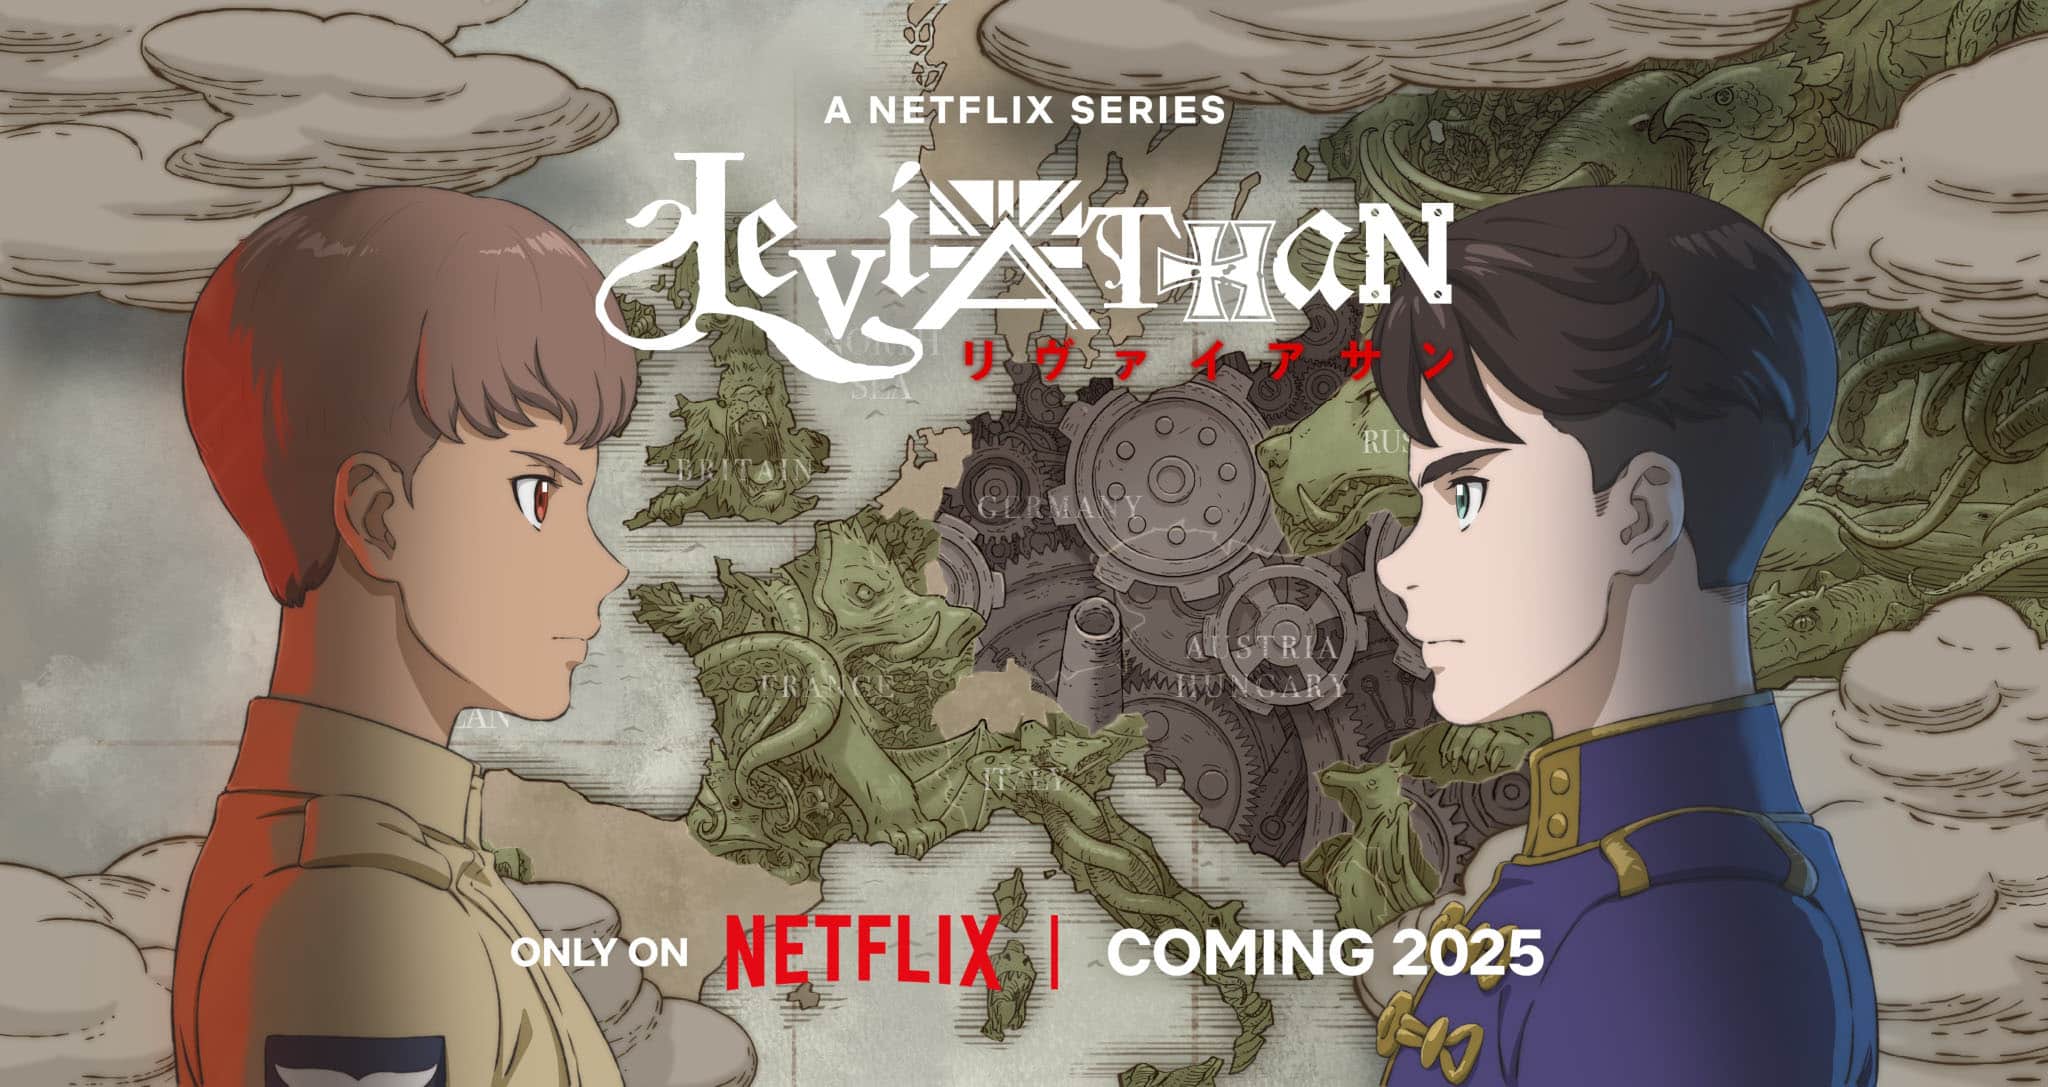 Premier visuel pour l'anime Leviathan.